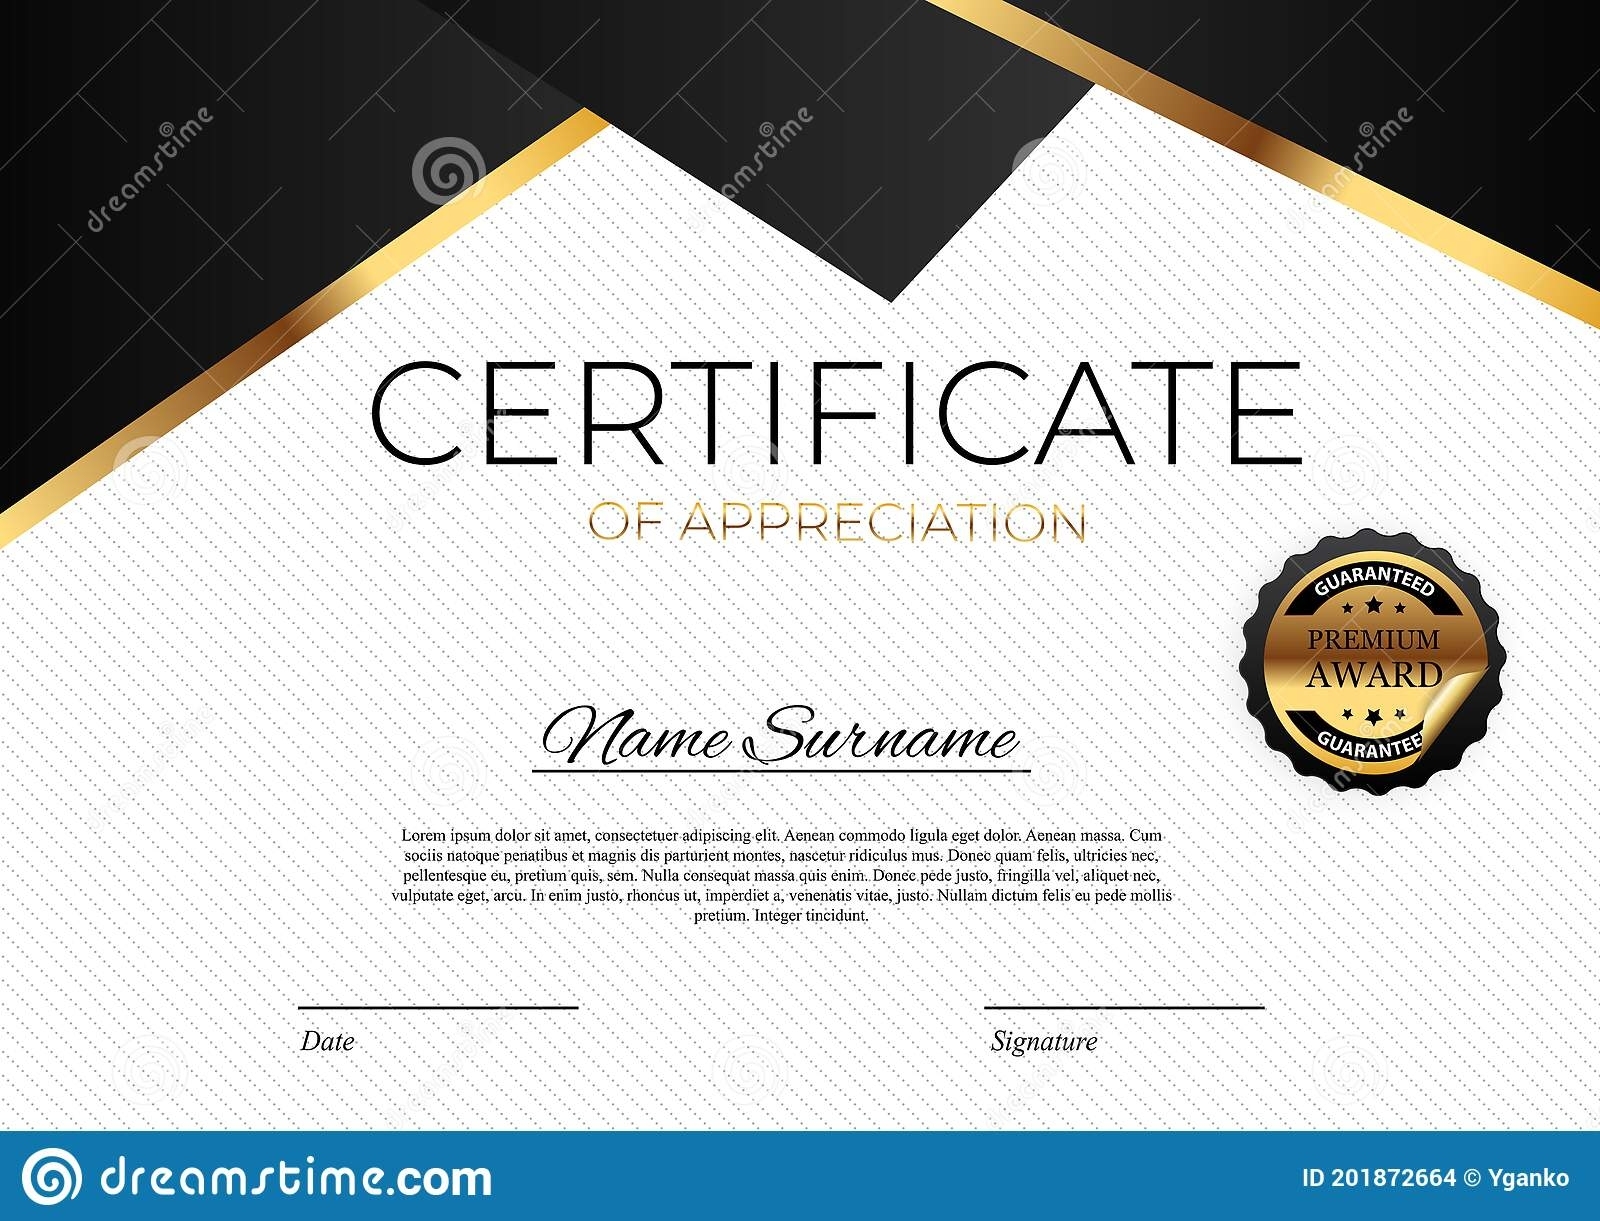 High Resolution Certificate Template Regarding High Resolution Certificate Template